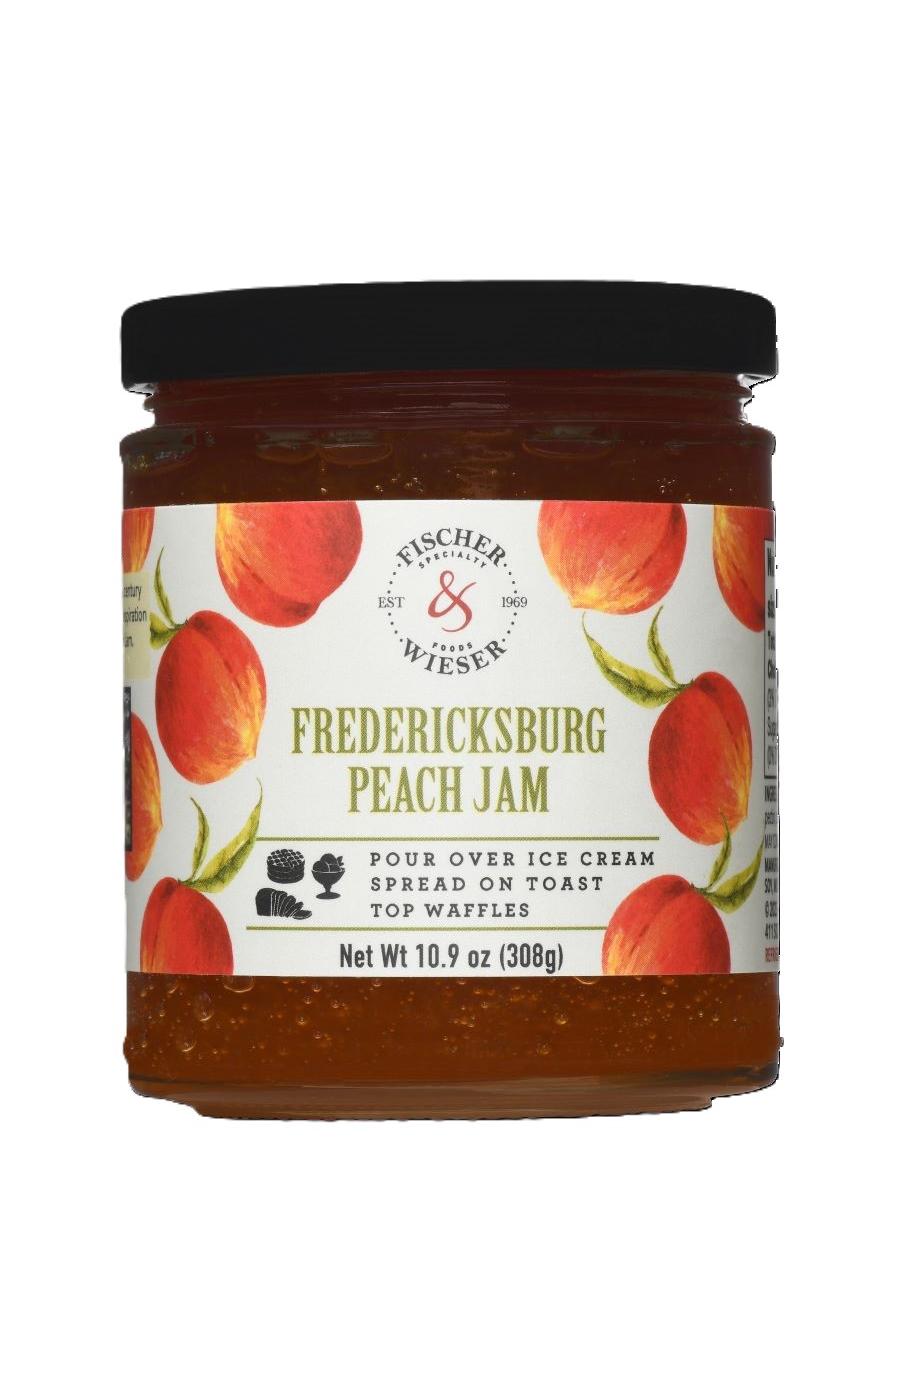 Fischer & Wieser Fredericksburg Peach Jam; image 1 of 3